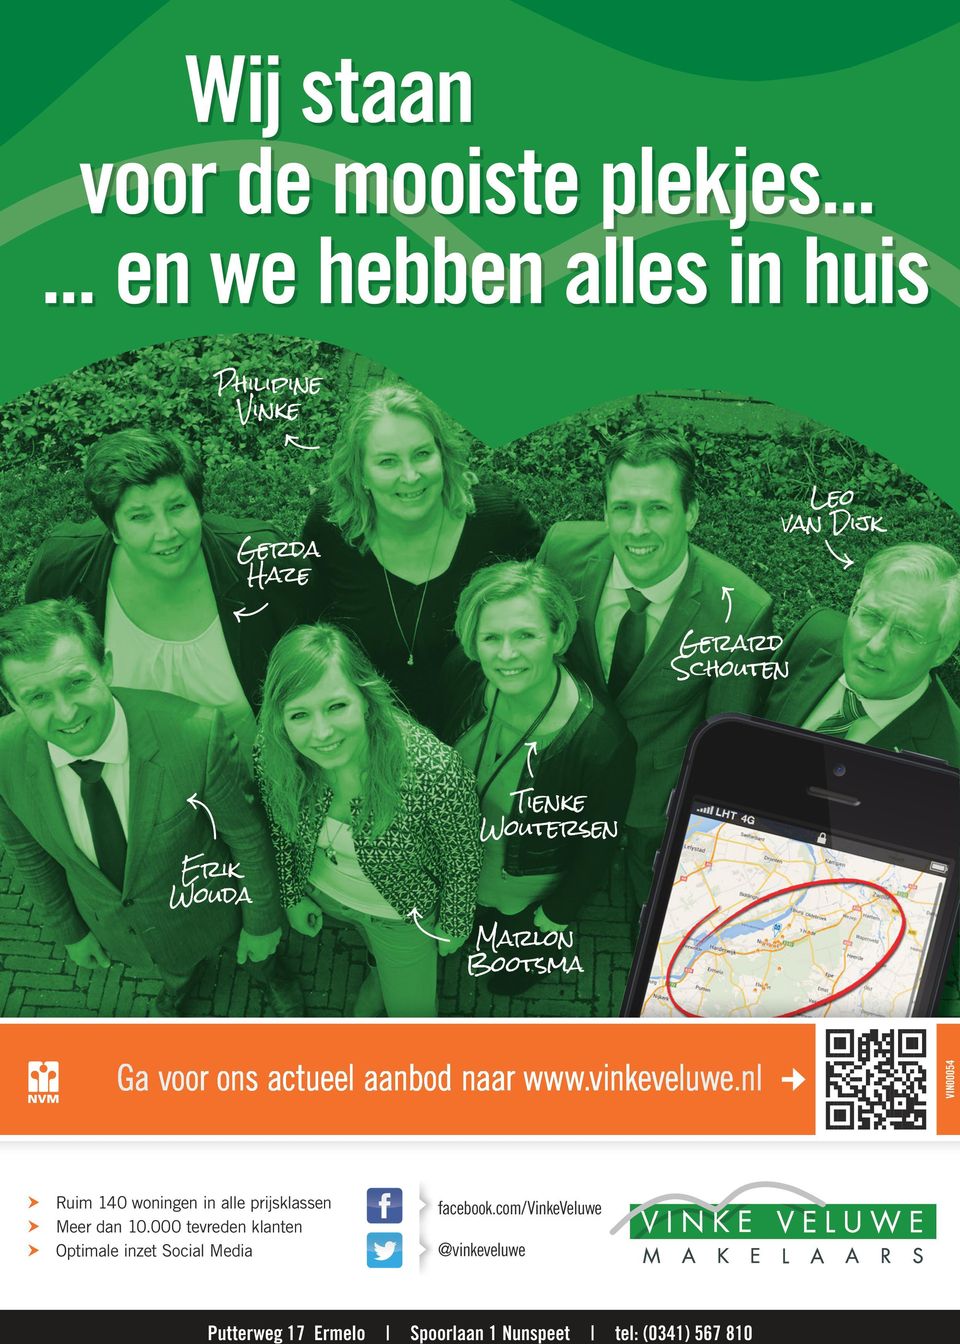 voor ons actueel aanbod naar www.vinkeveluwe.nl hh Ruim 140 woningen in alle prijsklassen hh Meer dan 10.